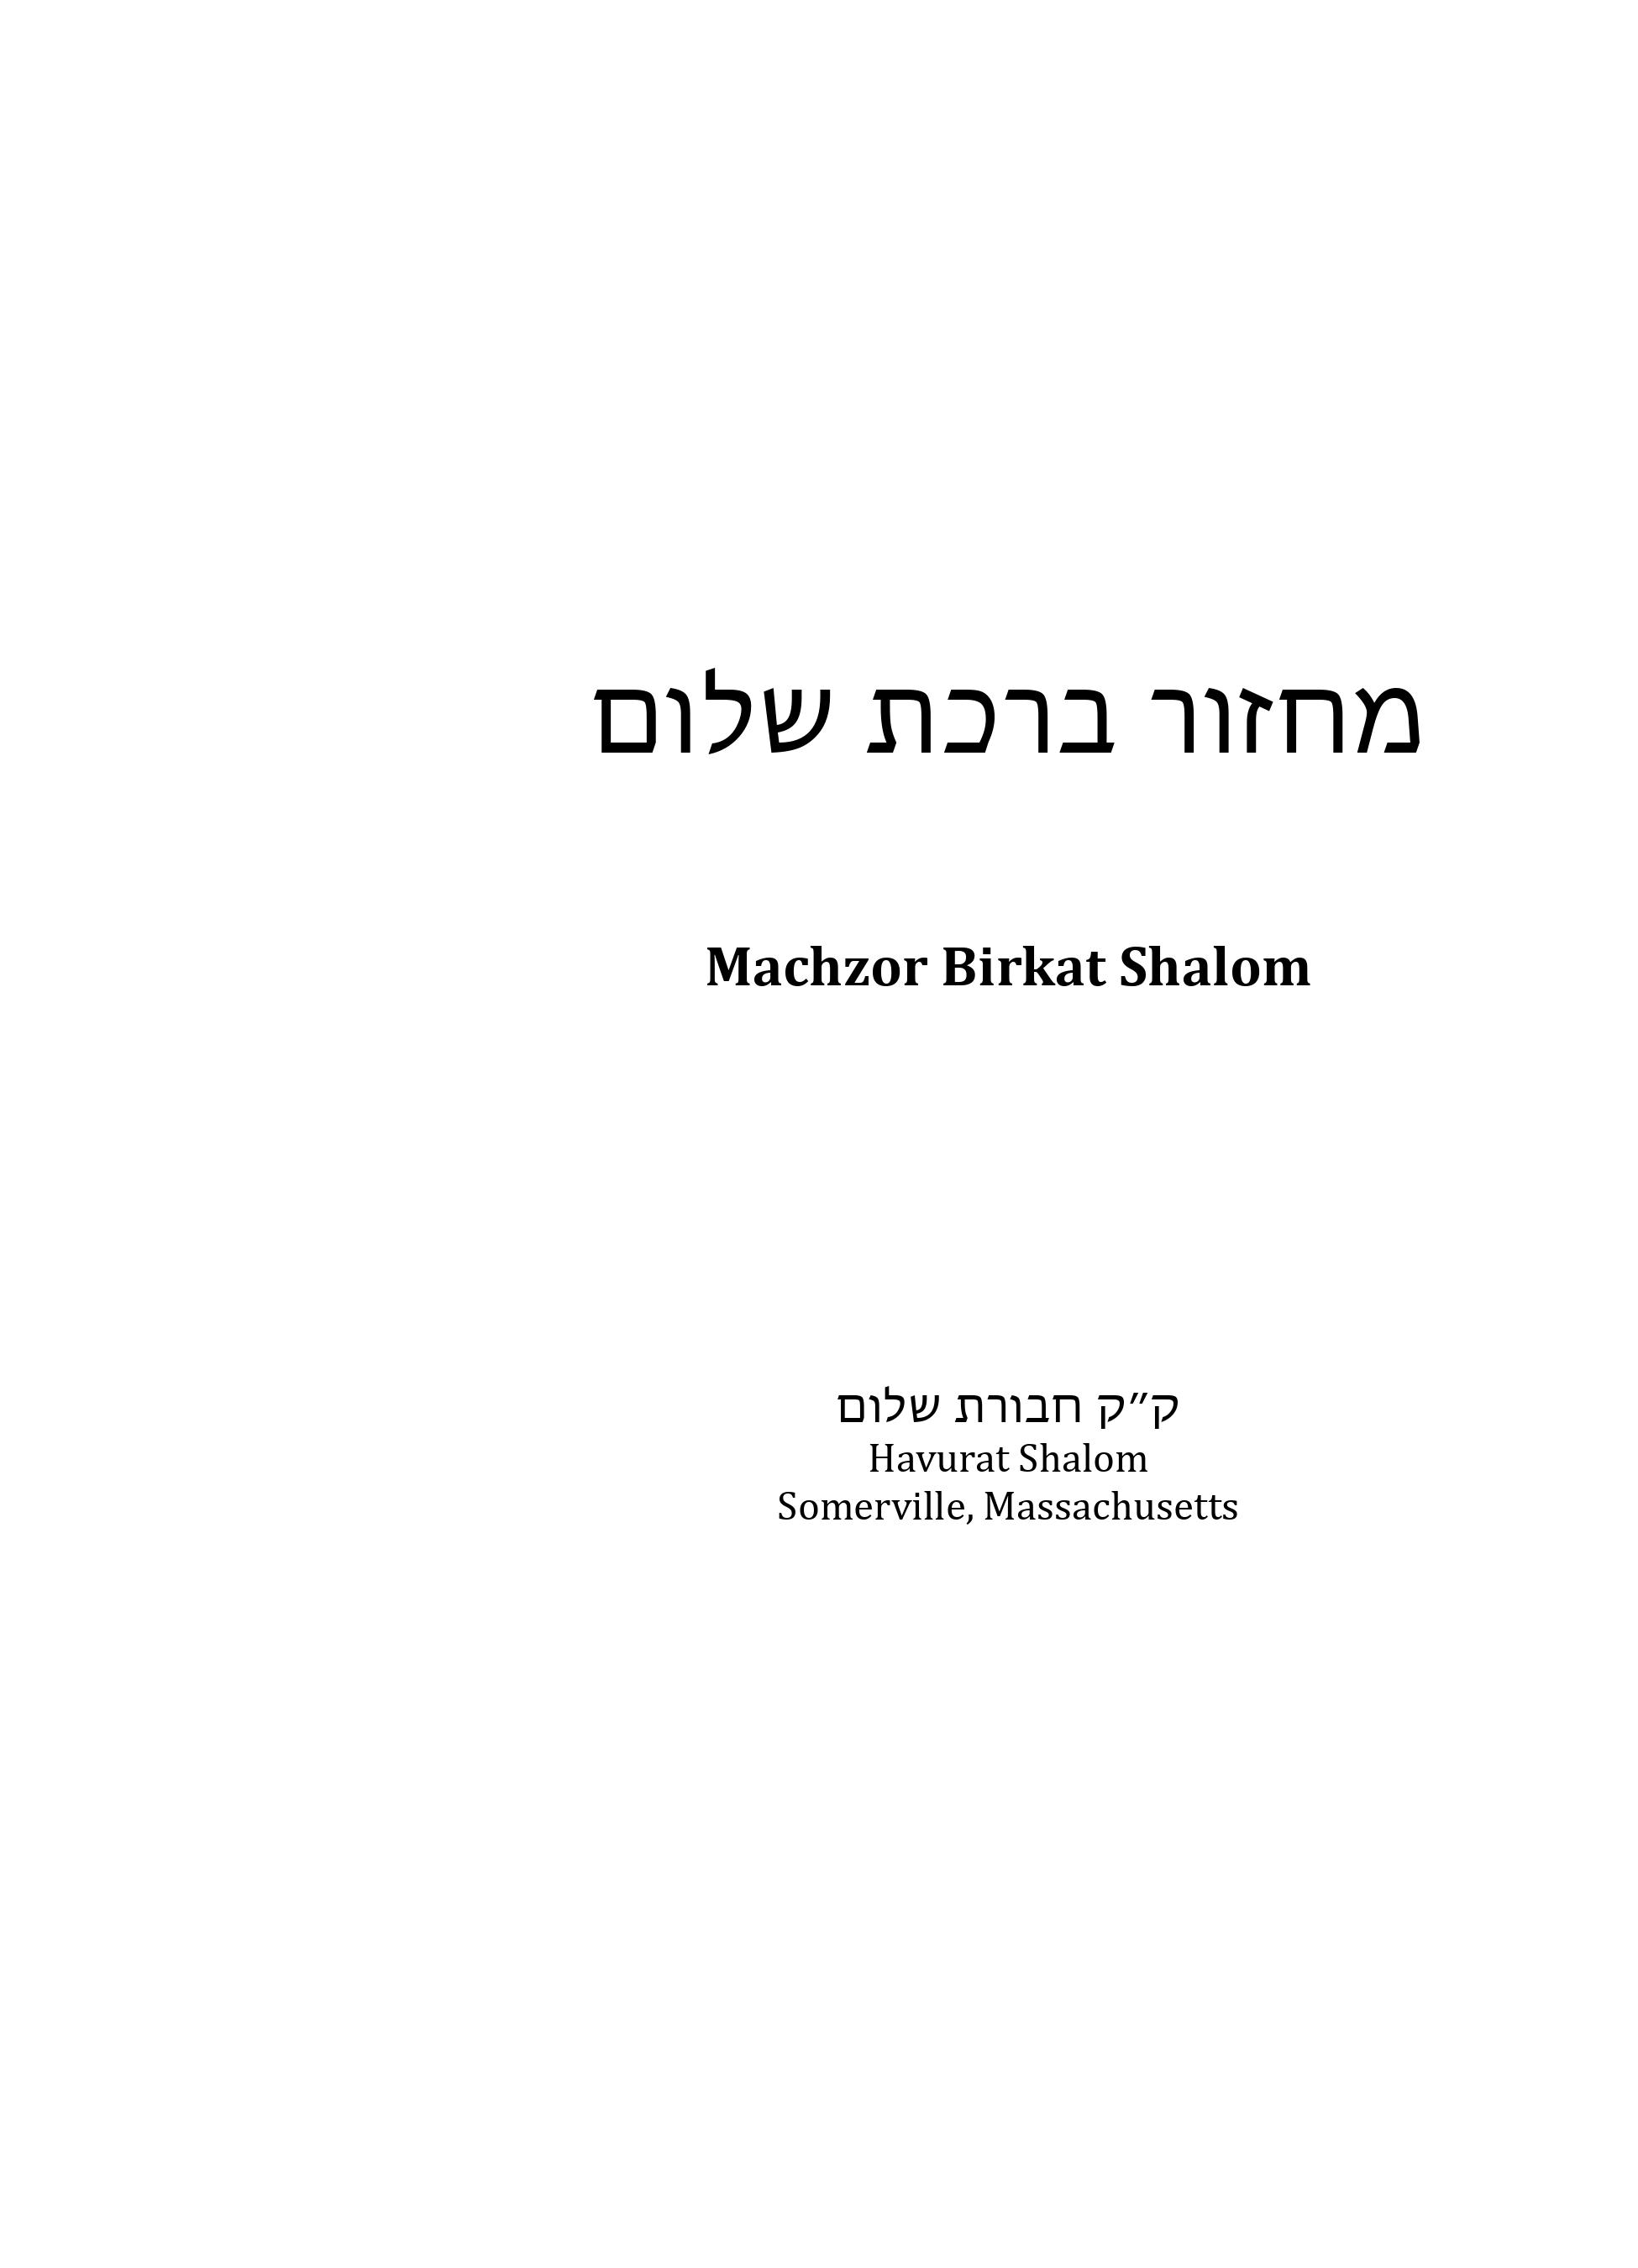 Machzor Birkat Shalom